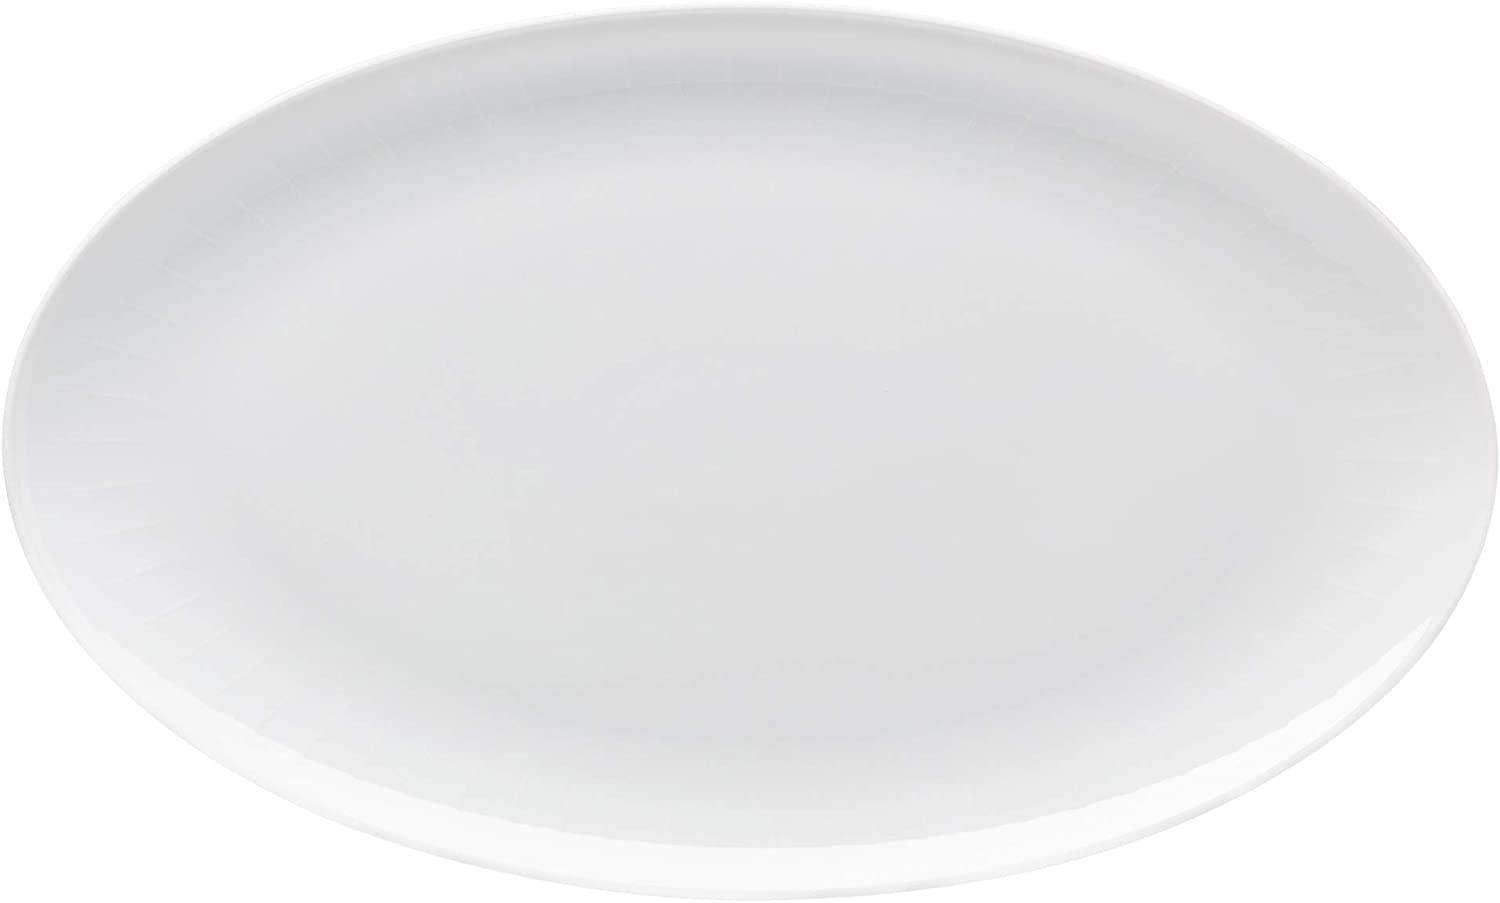 Arzberg Joyn Platte, Servierplatte, Porzellan, Weiß, 38 cm, 44020-800001-12738 Bild 1